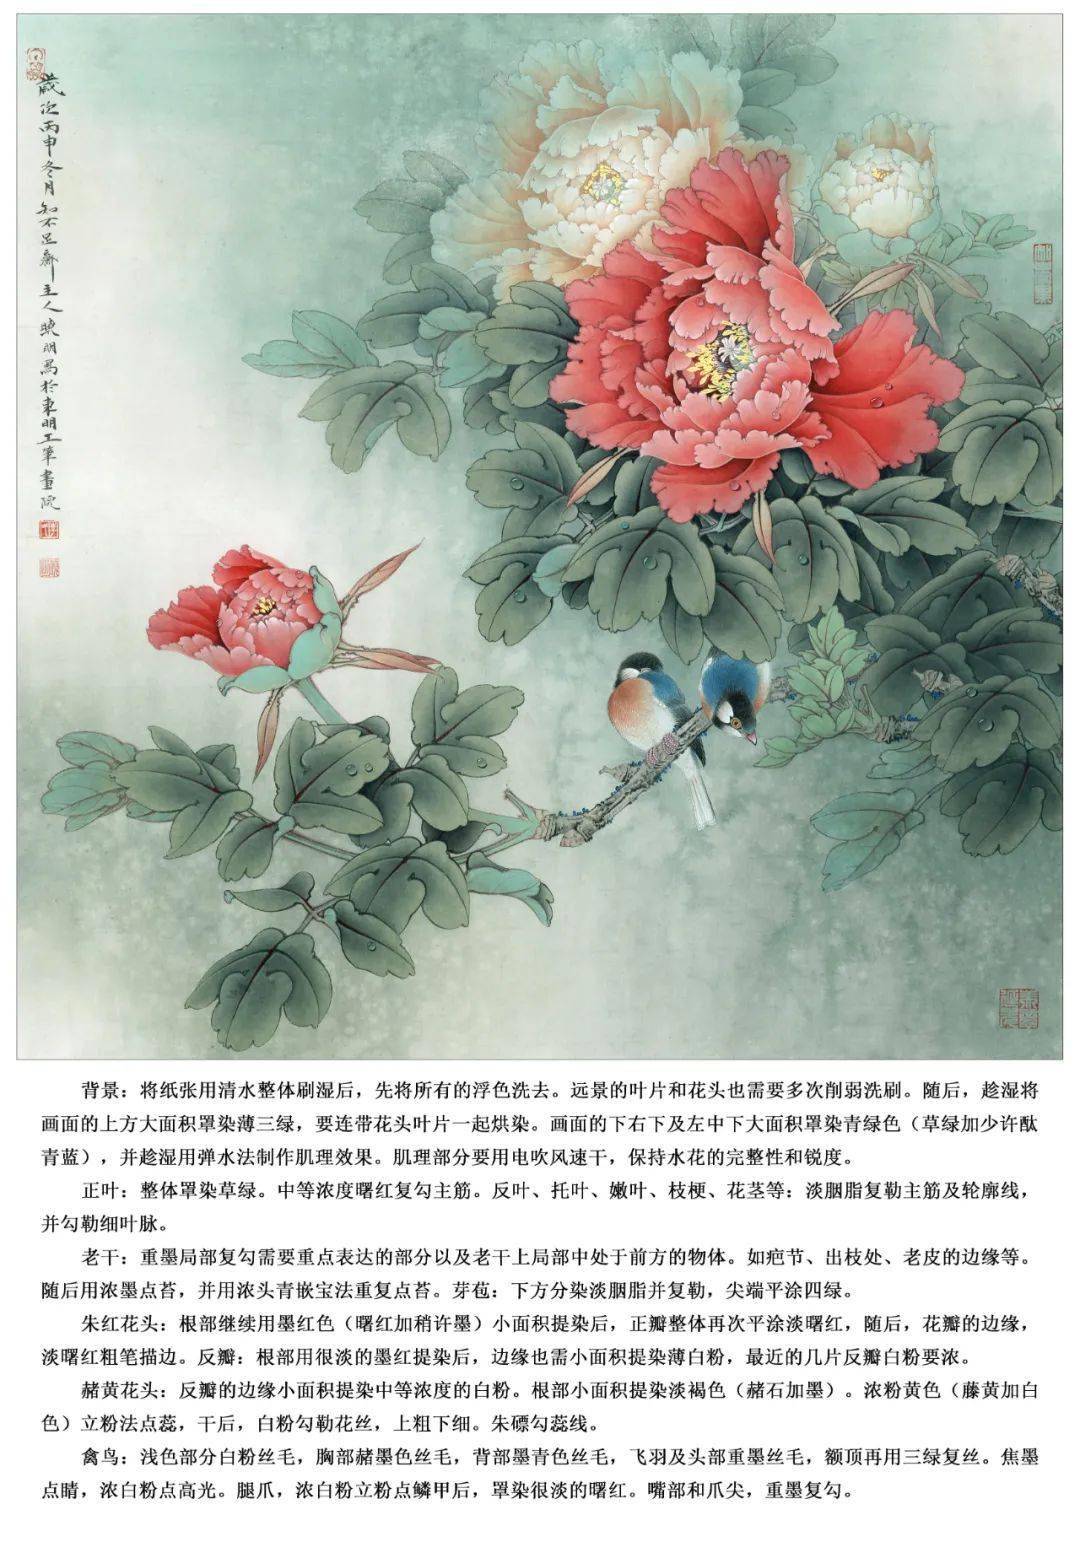 李晓明四条屏牡丹教程图片